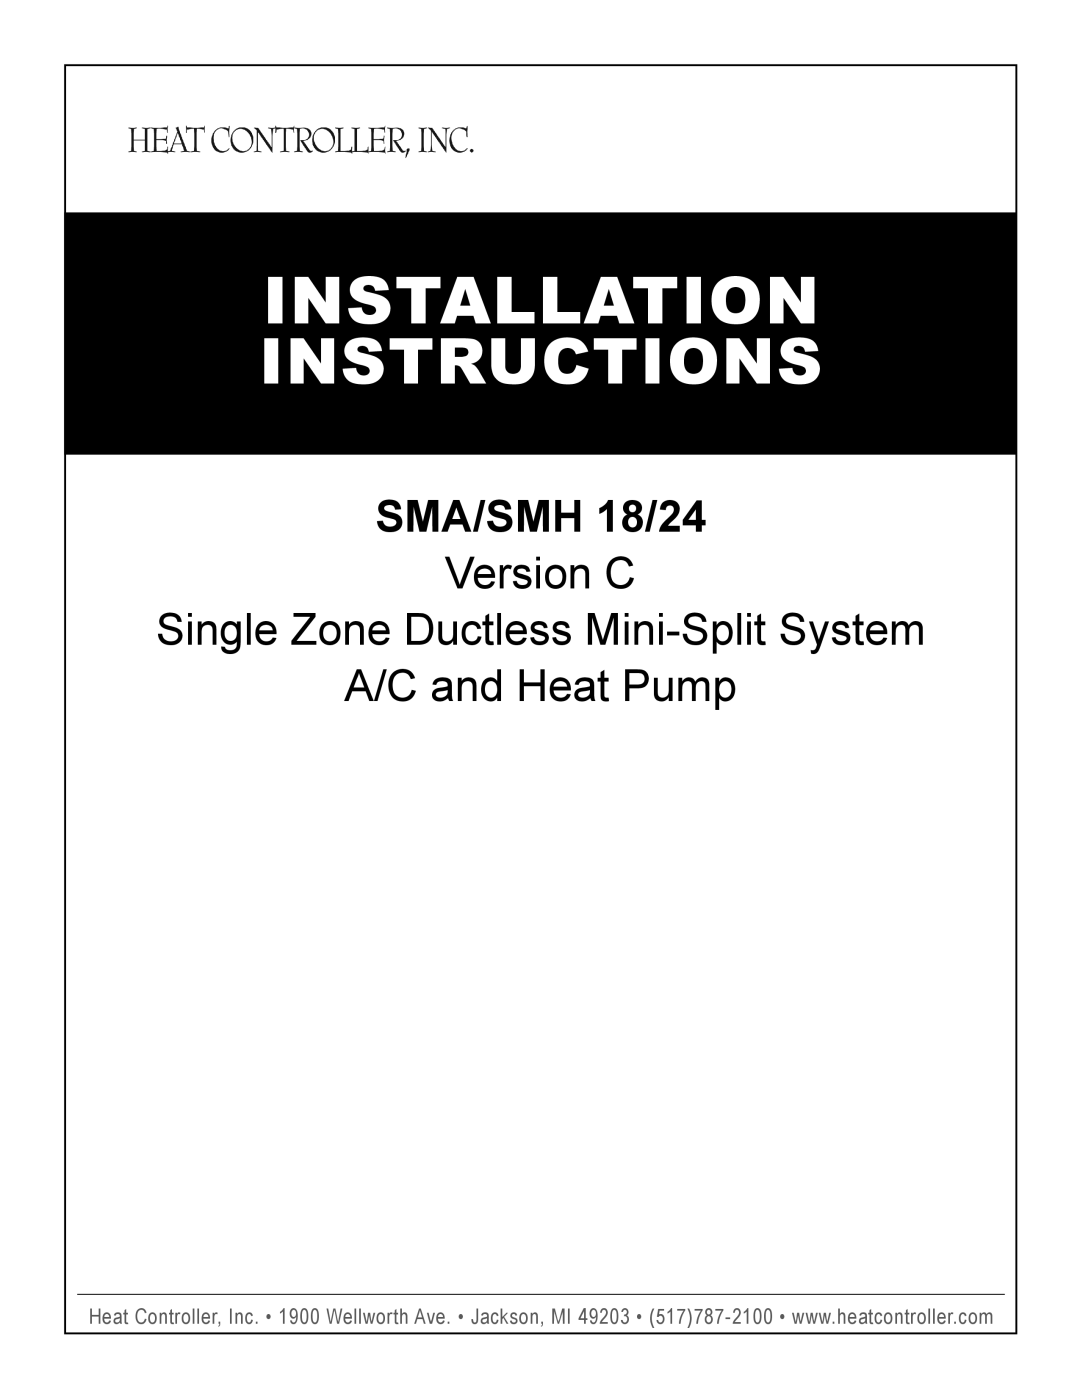 Heat Controller SMA/SMH 18/24 installation instructions Installation, Instructions, A/C and Heat Pump 